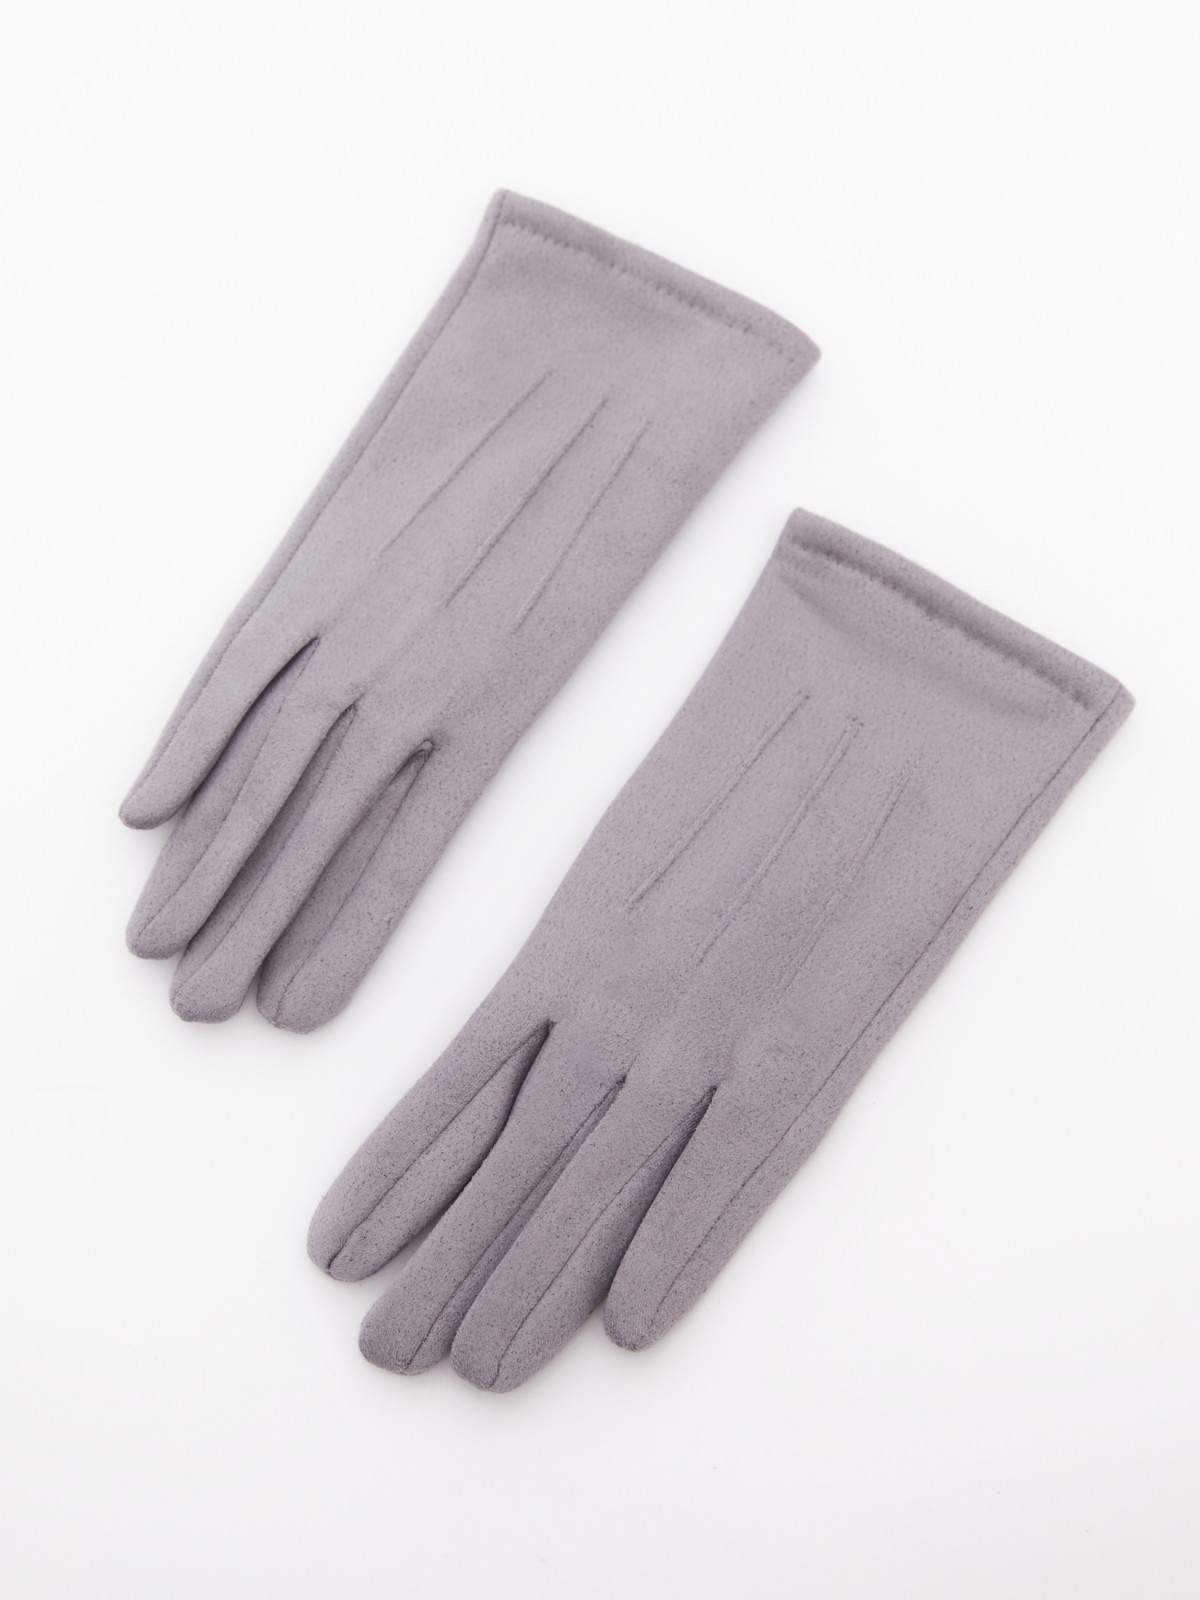 Утеплённые текстильные перчатки с функцией Touch Screen zolla 023339659025, цвет серый, размер S